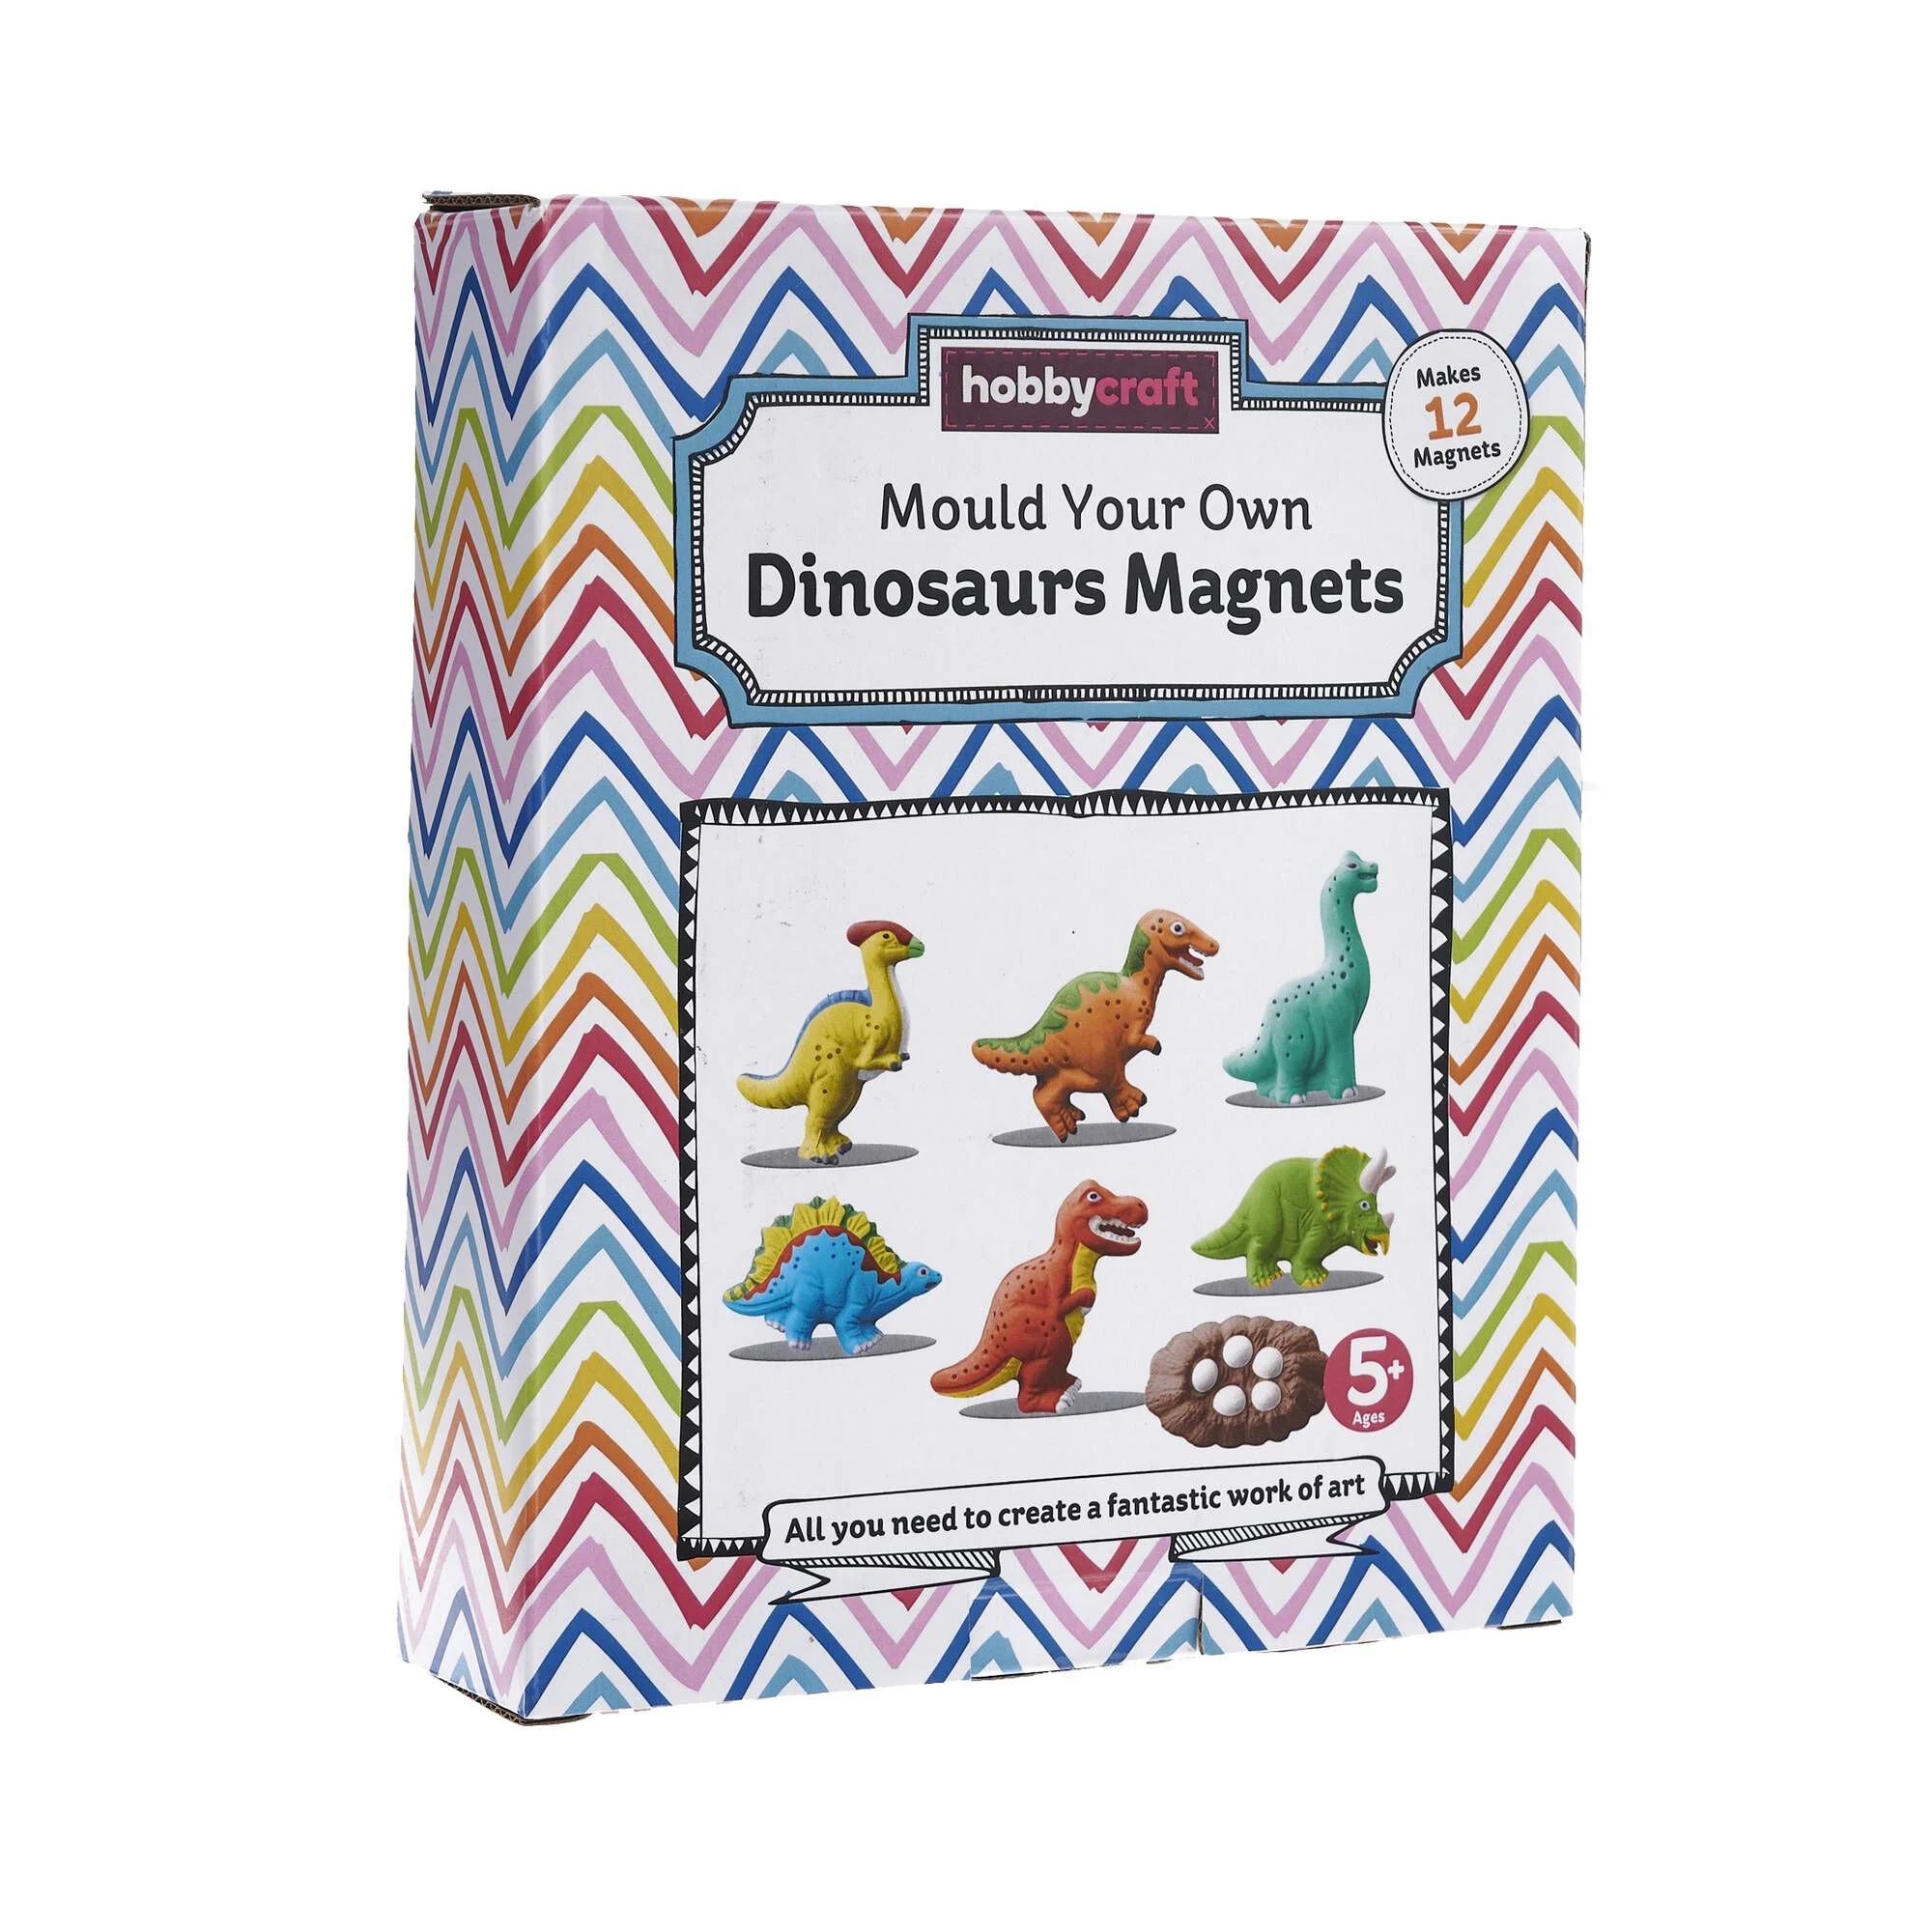 Sparen Sie 3 £ bei diesem Set Dinosaurier-Magneten bei Hobbycraft